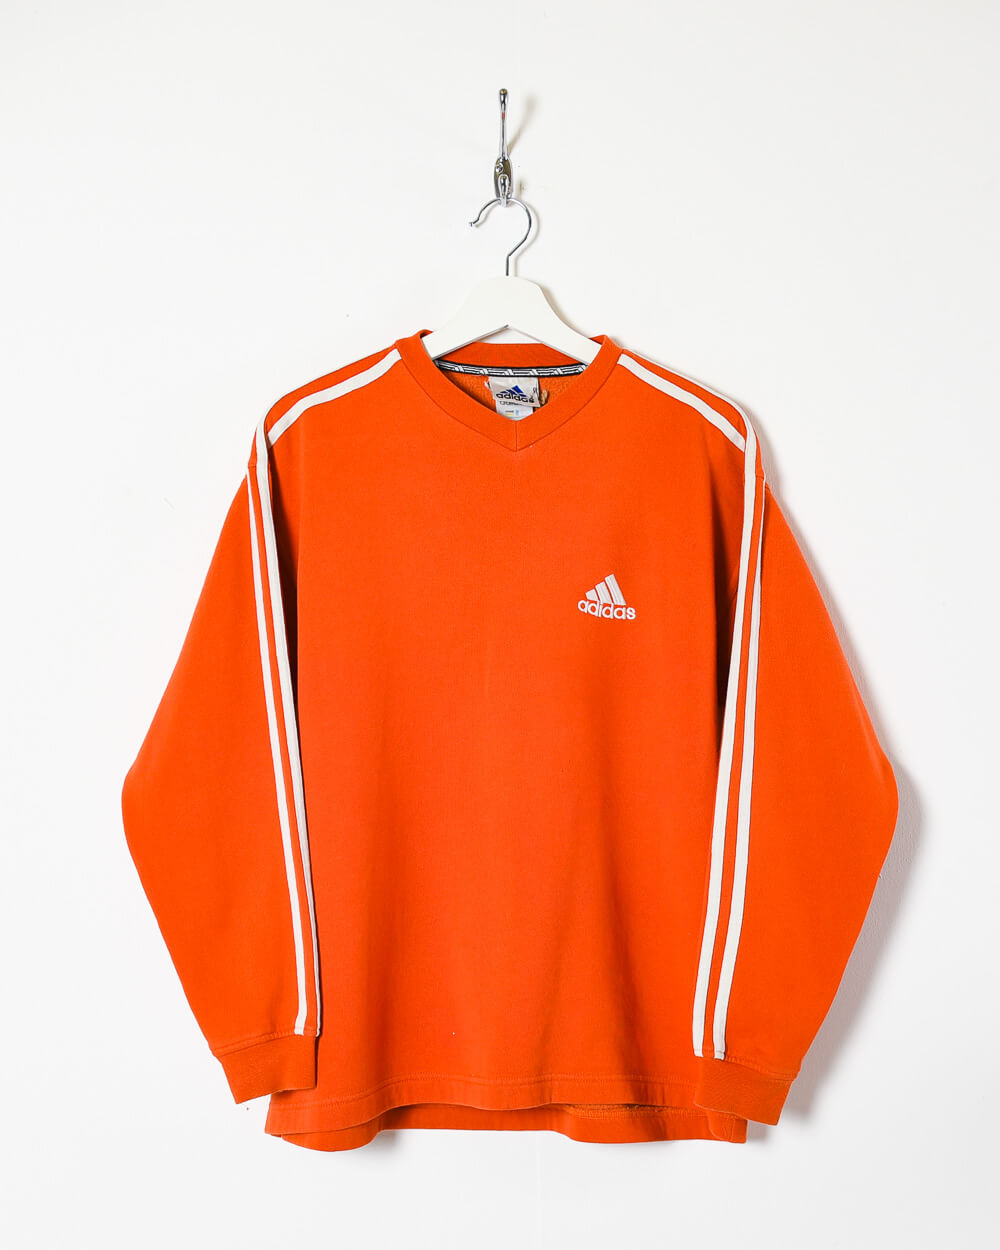 Orange Adidas Sweatshirt - Large